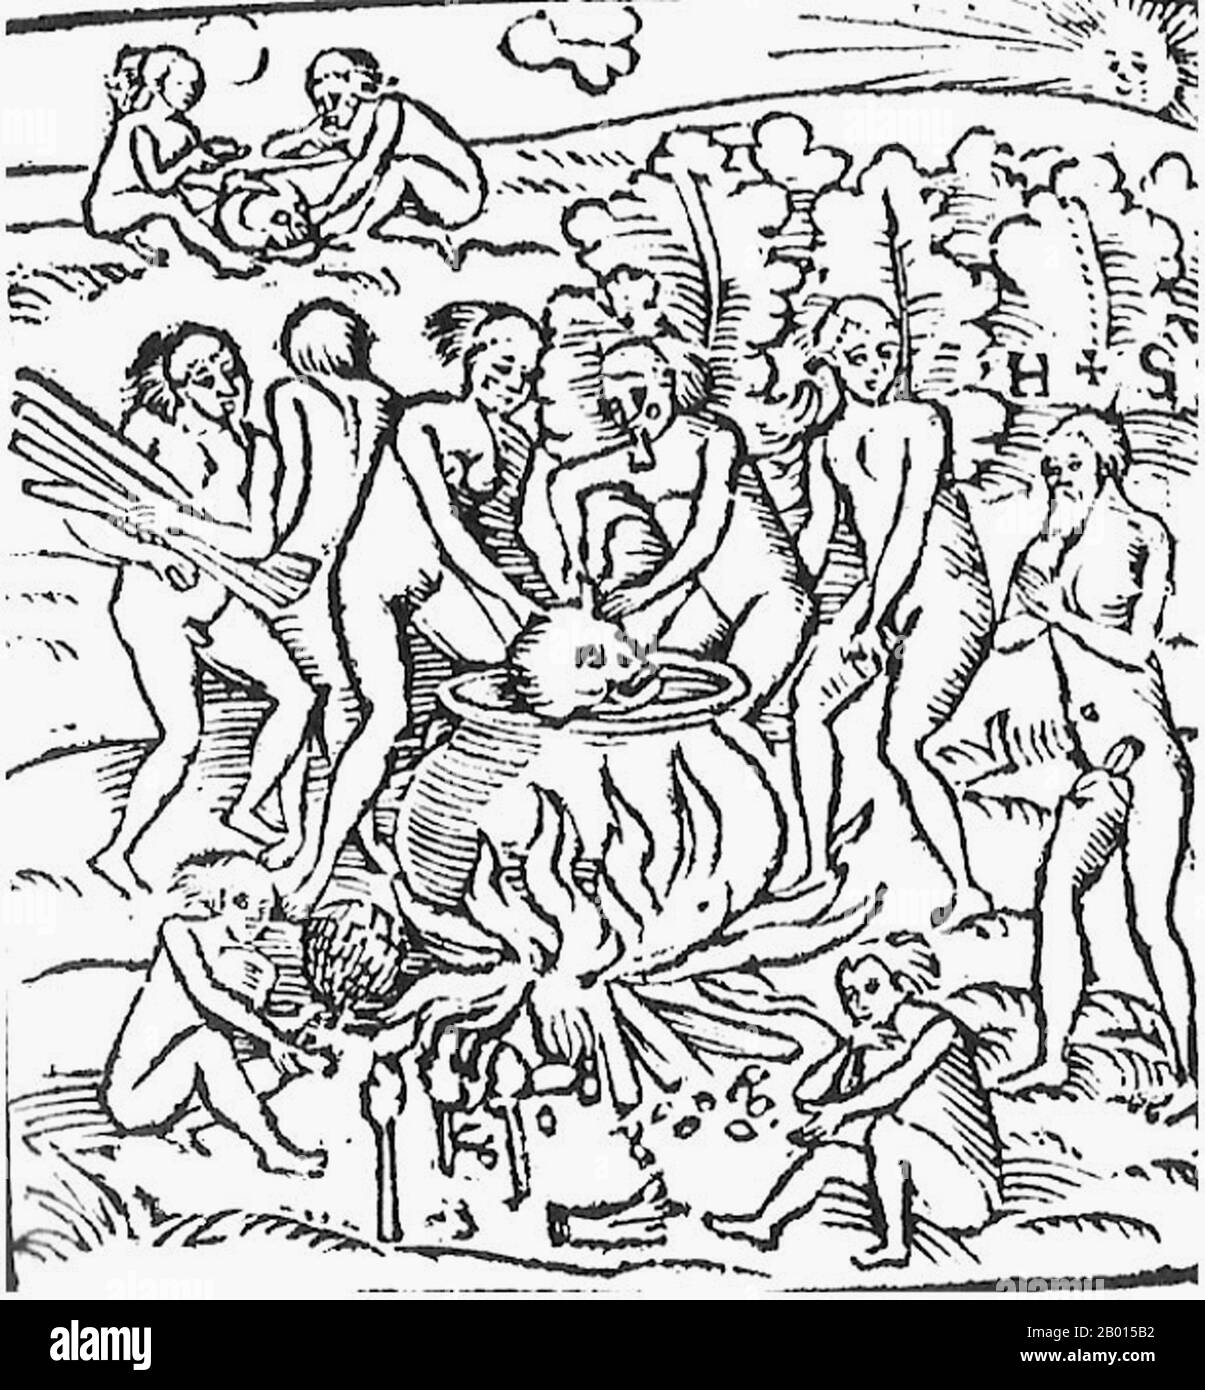 Brasilien: Kannibalismus in Brasilien 1557, wie Hans Staden behauptet. Holzschnitt von einem nicht identifizierten Künstler, c. 1557. Hans Staden (c. 1525 - c. 1579) war ein deutscher Soldat und Seefahrer, der nach Südamerika unterwegs war. Auf einer Reise wurde er von den Tupinamba-Menschen in Brasilien gefangen genommen, von denen er behauptete, er praktiziere Kannibalismus. Er schrieb ein weit geleses Buch, in dem seine Erfahrungen beschrieben wurden. Stockfoto